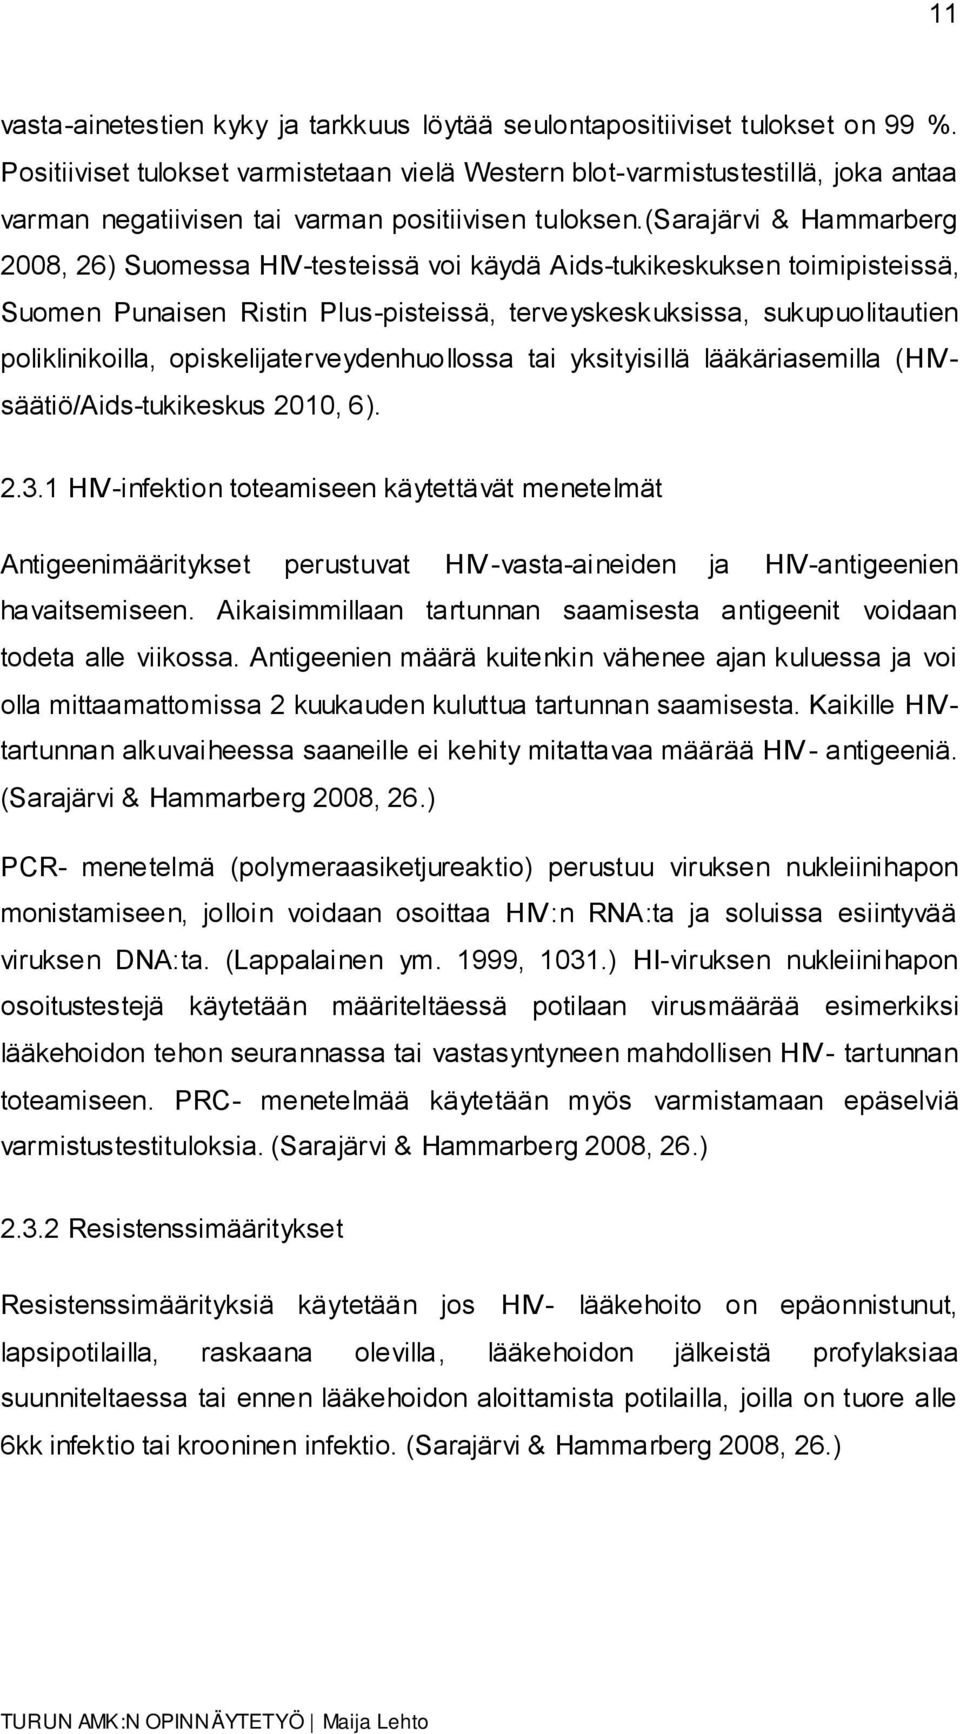 (sarajärvi & Hammarberg 2008, 26) Suomessa HIV-testeissä voi käydä Aids-tukikeskuksen toimipisteissä, Suomen Punaisen Ristin Plus-pisteissä, terveyskeskuksissa, sukupuolitautien poliklinikoilla,